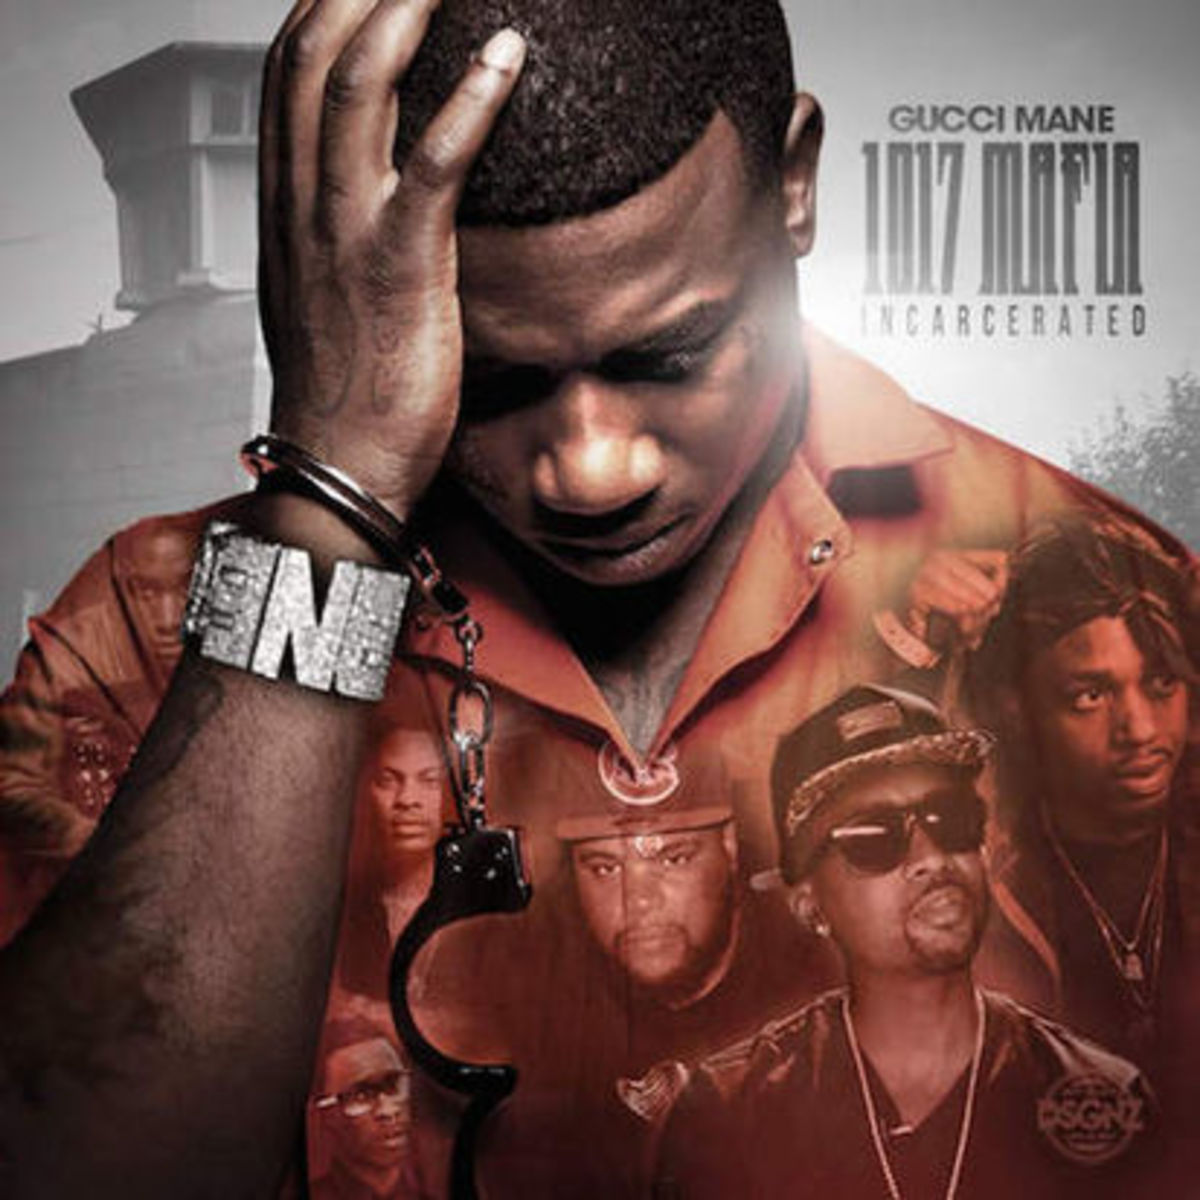 Stream Gucci Mane’s “1017 Mafia” Album Complex